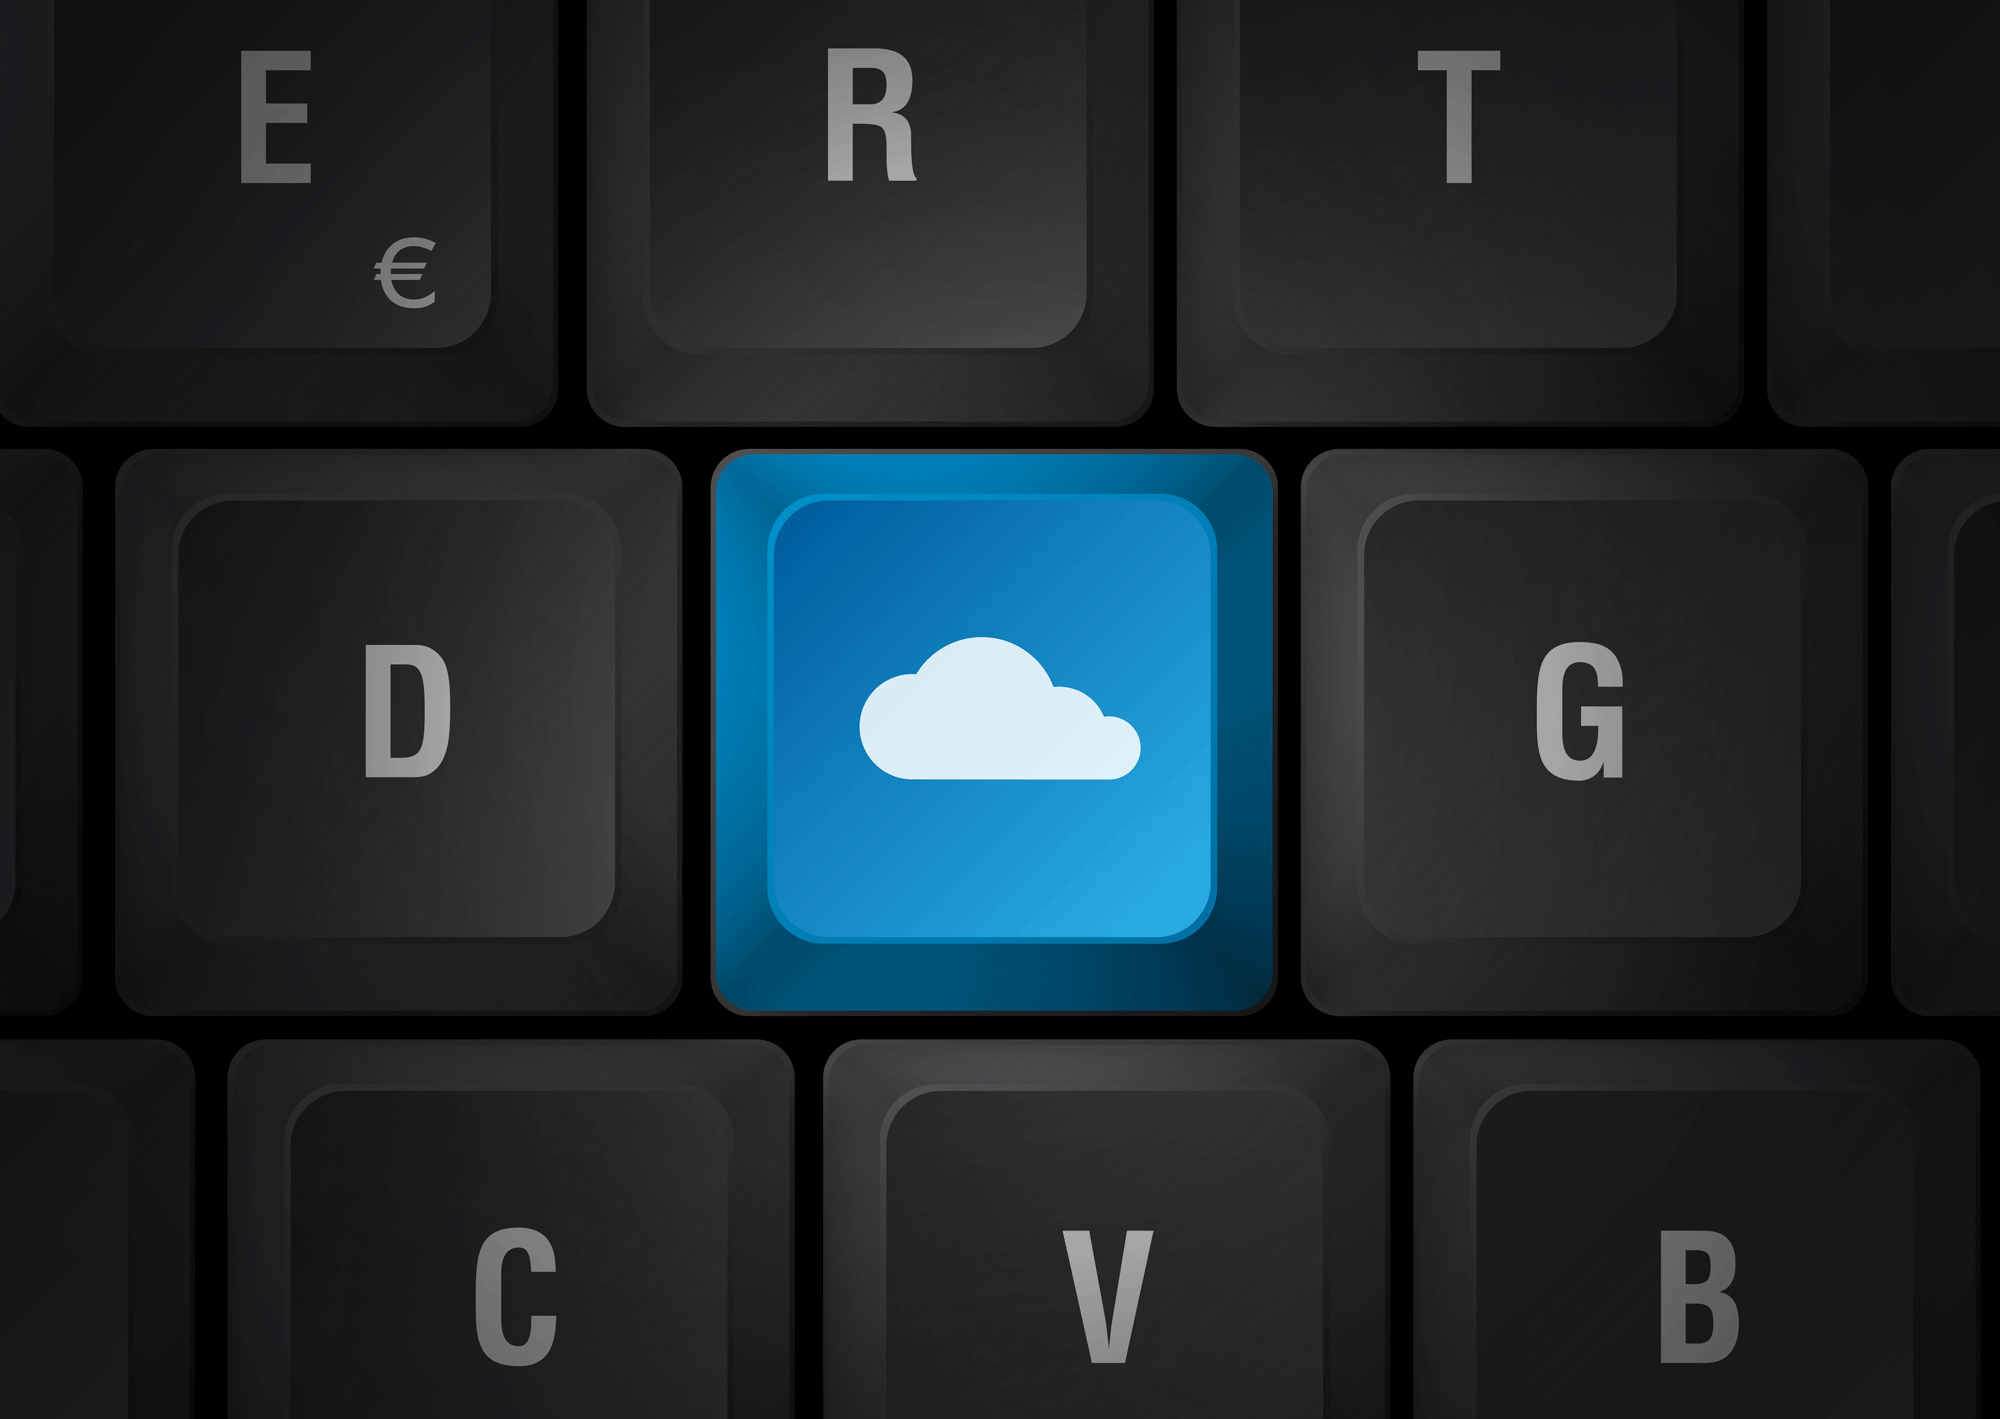 Le "Cloud computing" permet de stocker des données sur des serveurs externes. [Thomas Pajot]